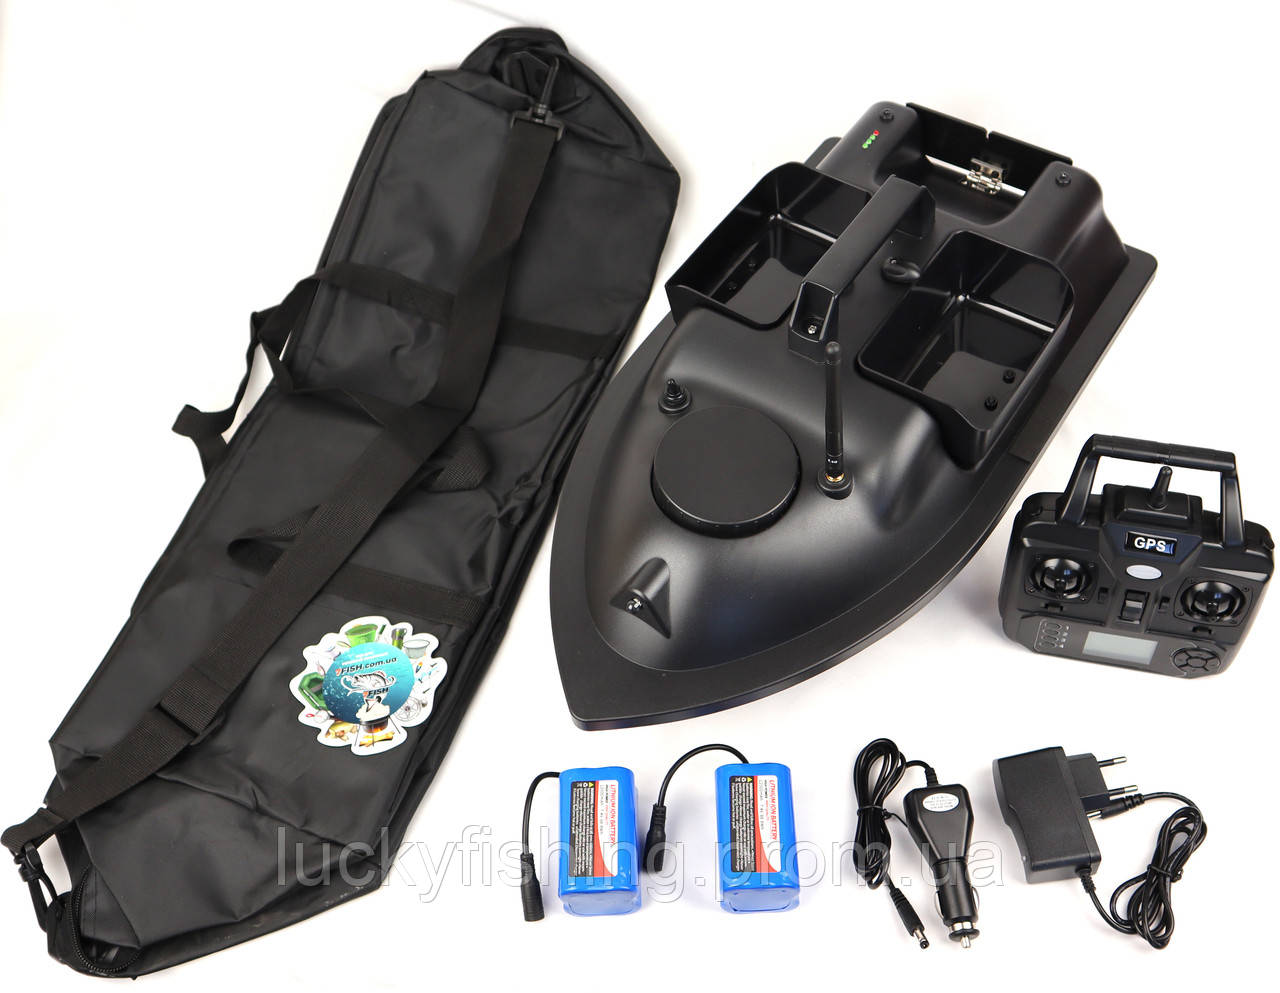 Кораблик для завезення снастей і підгодовування Flytec FULL V010 GPS 2 акумулятори 12000mAh (посилені) + зарядка авто + сумка